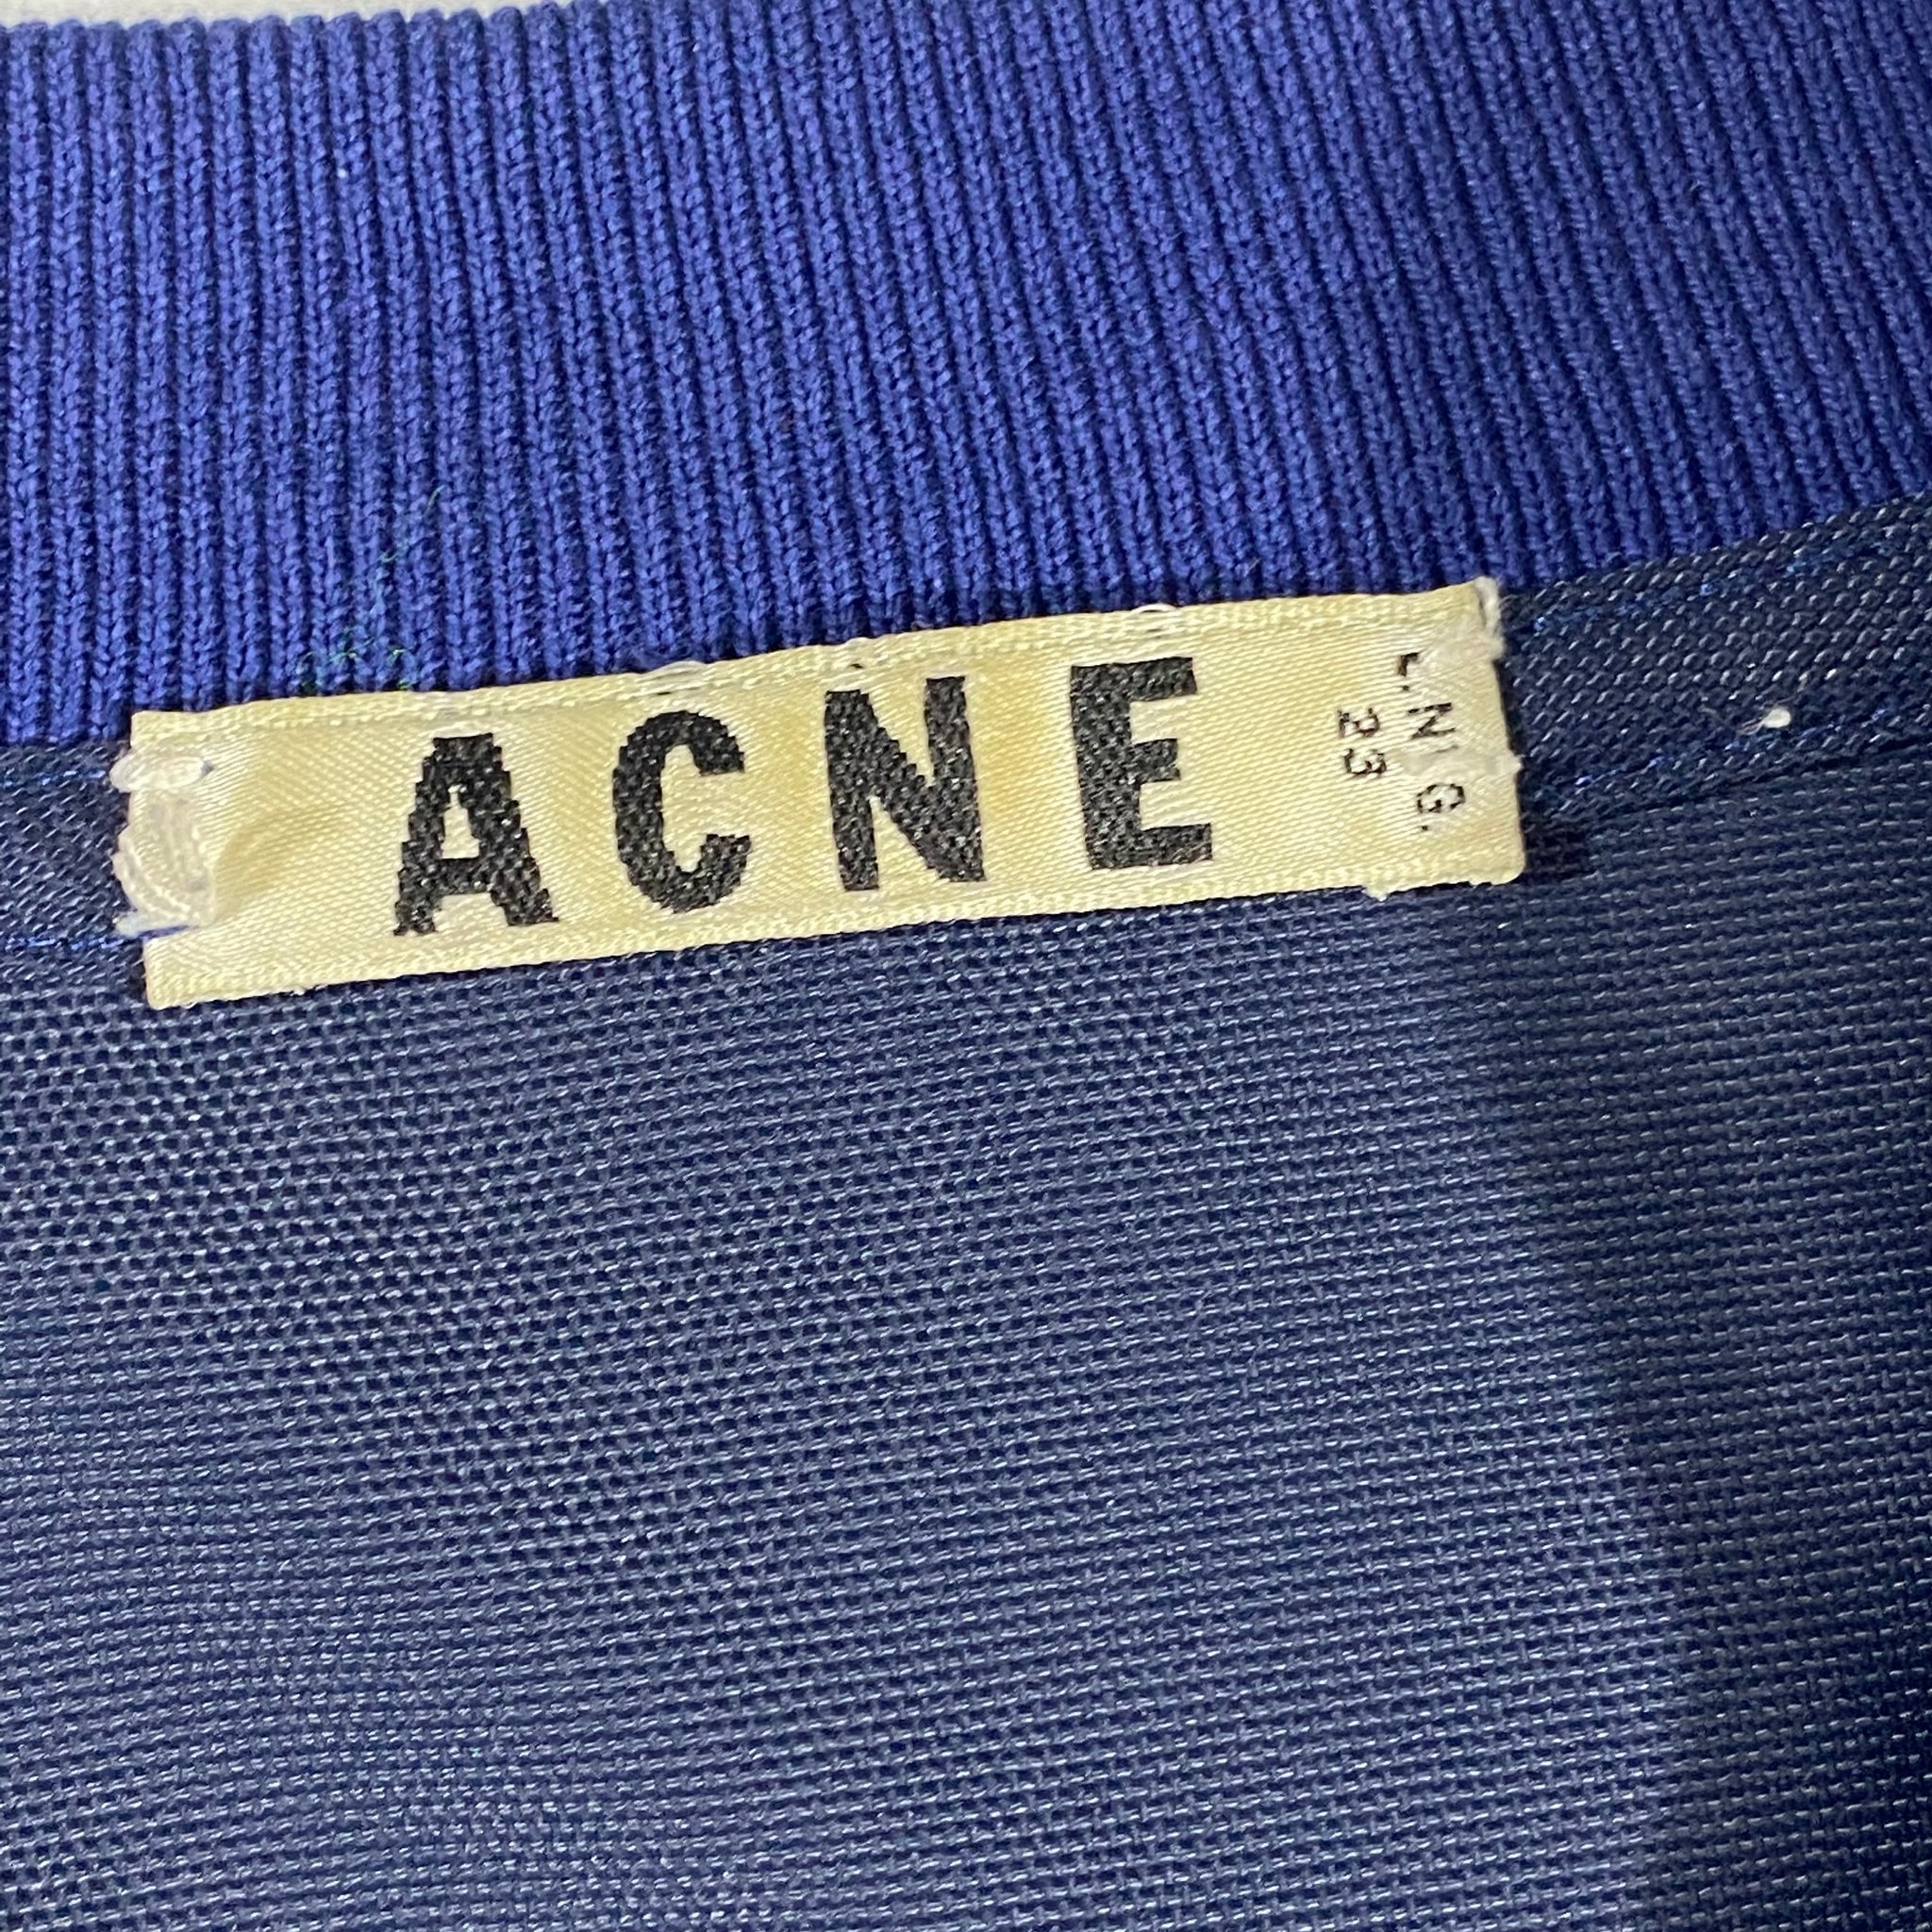 Acne jacket. M/L